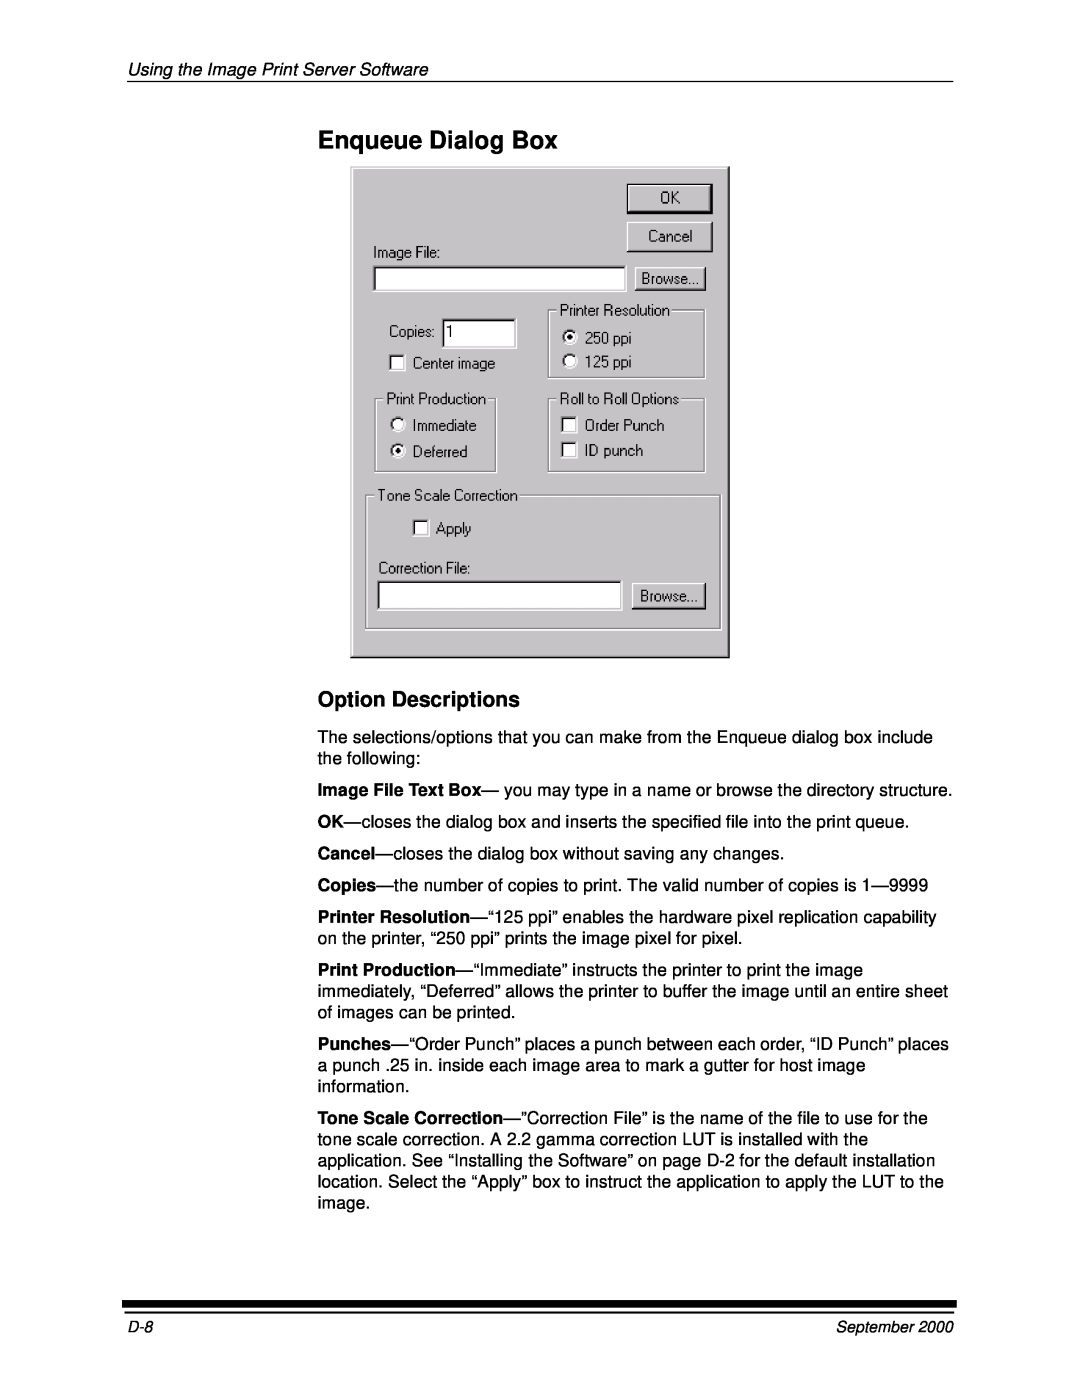 Kodak 20R manual Enqueue Dialog Box, Option Descriptions, Using the Image Print Server Software 